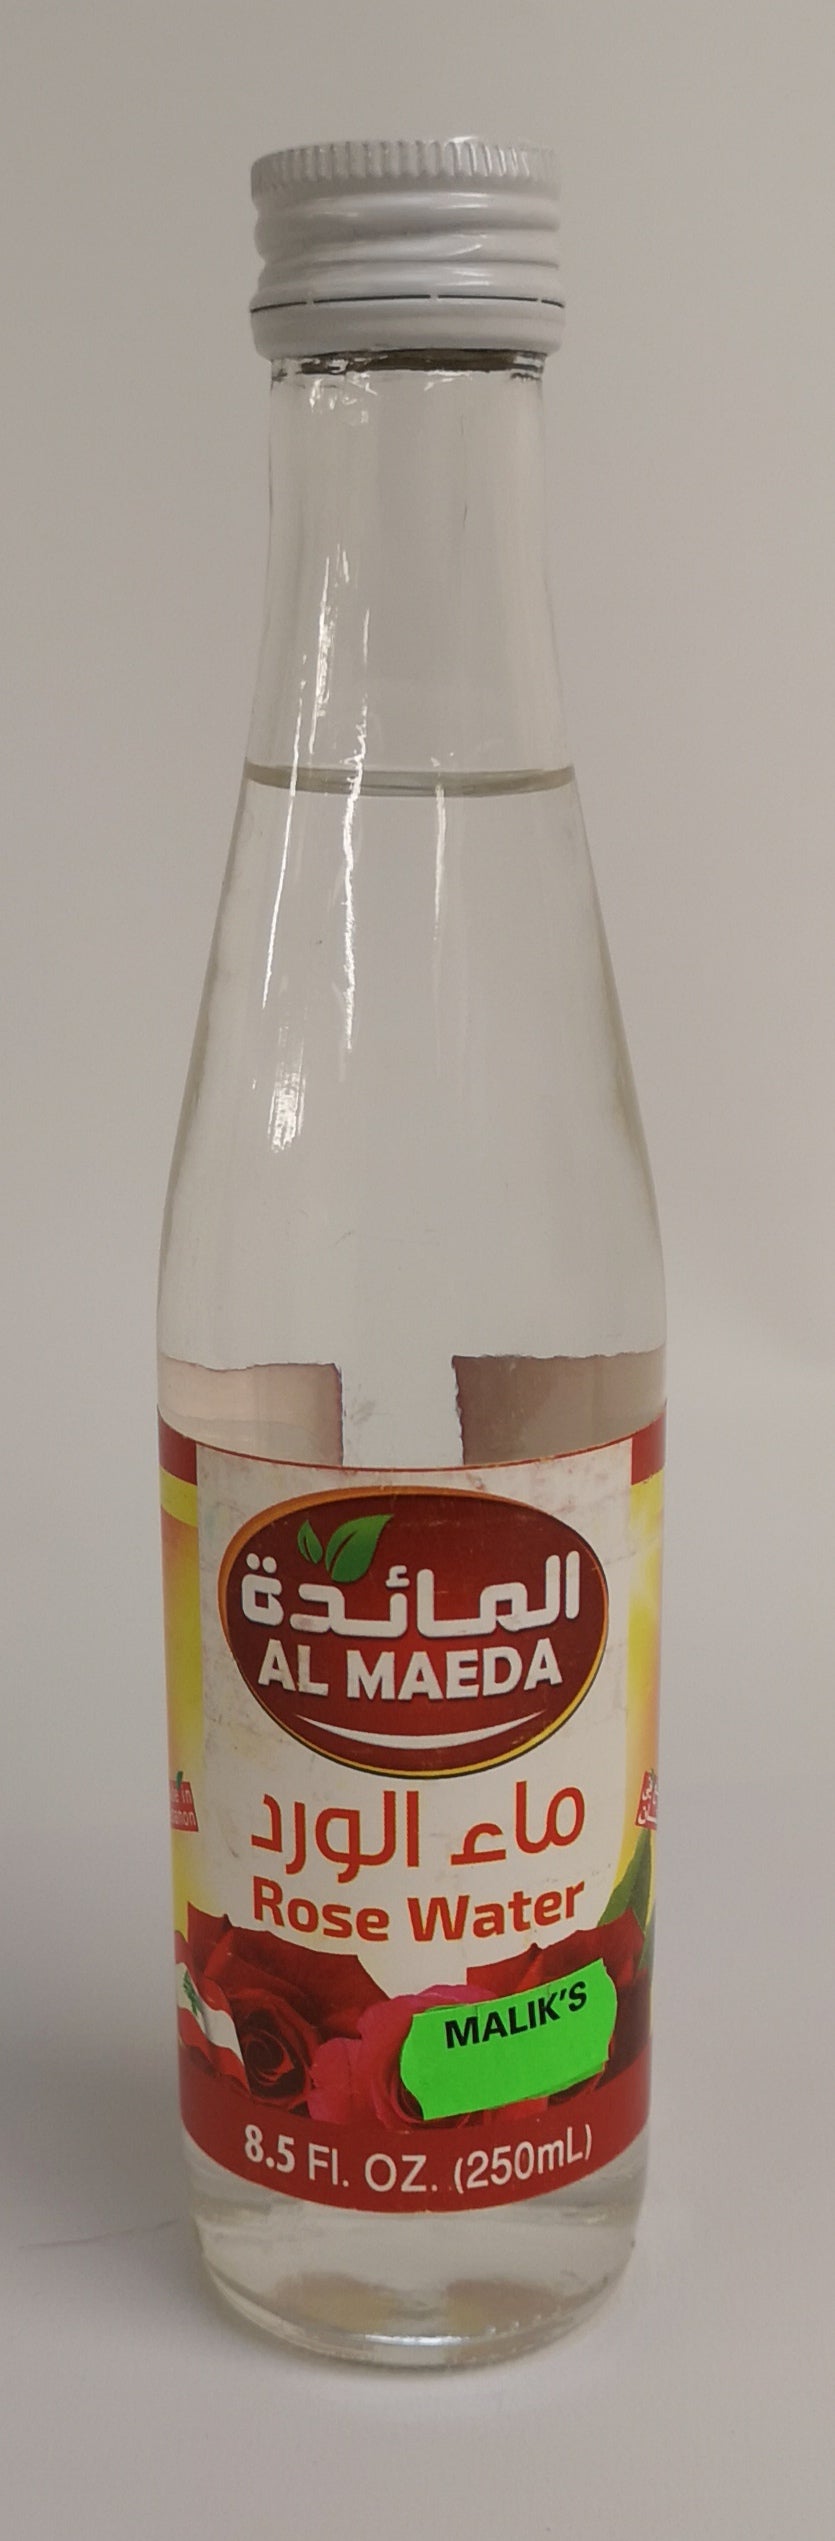 Al Maeda Rose Water